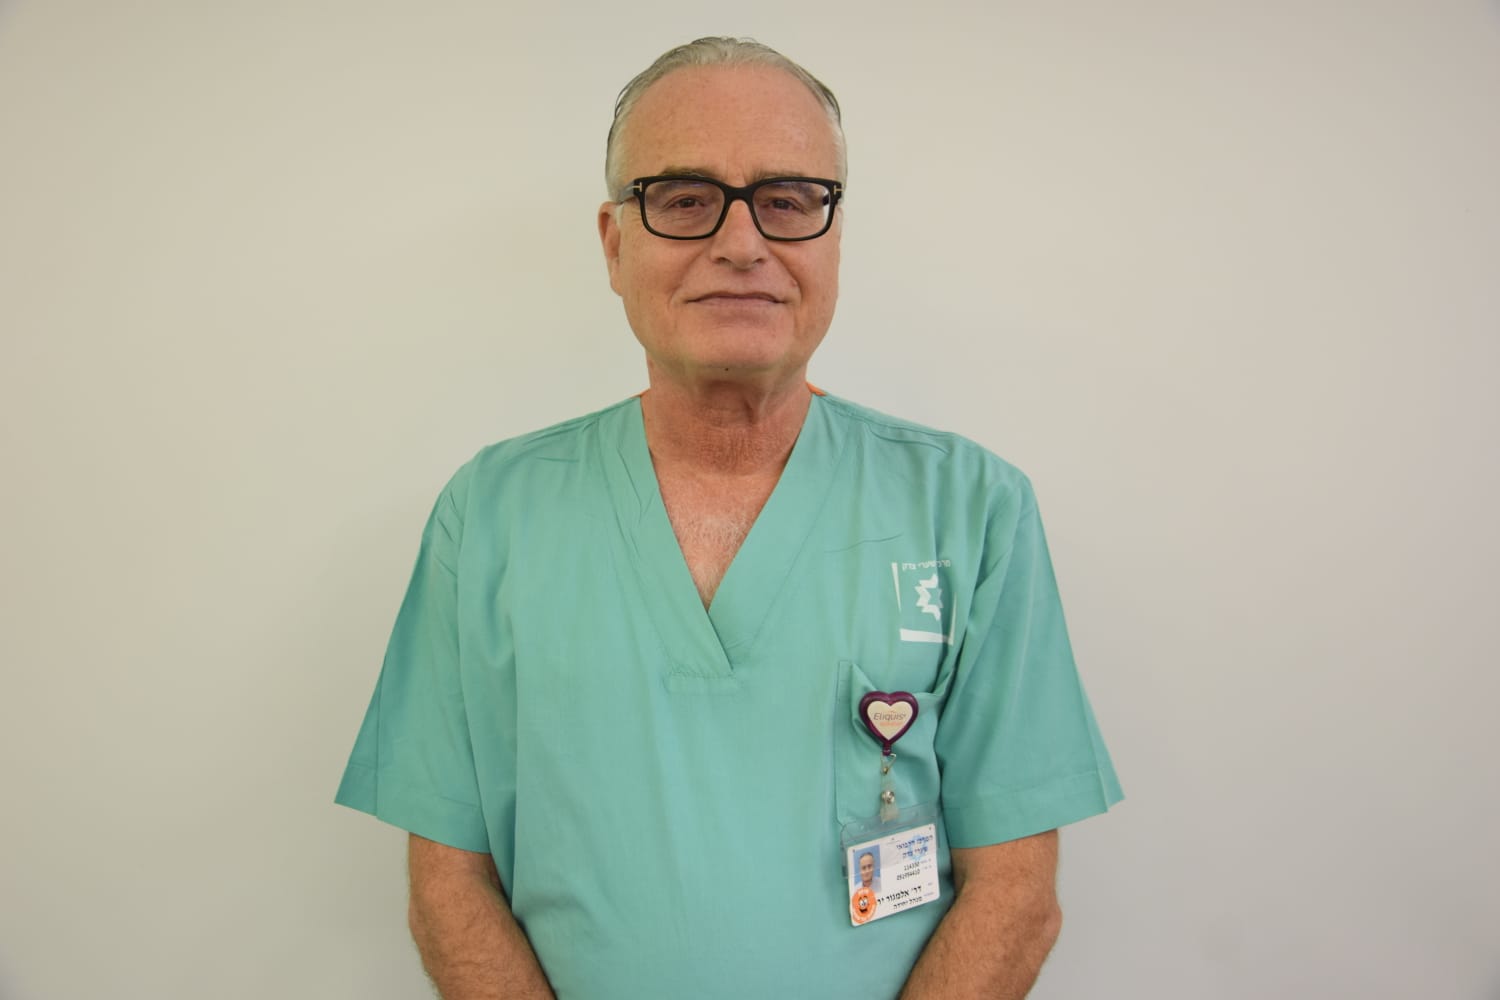 Альмагор Ярон — Кардиохирург. Специалист по инвазивной кардиологии